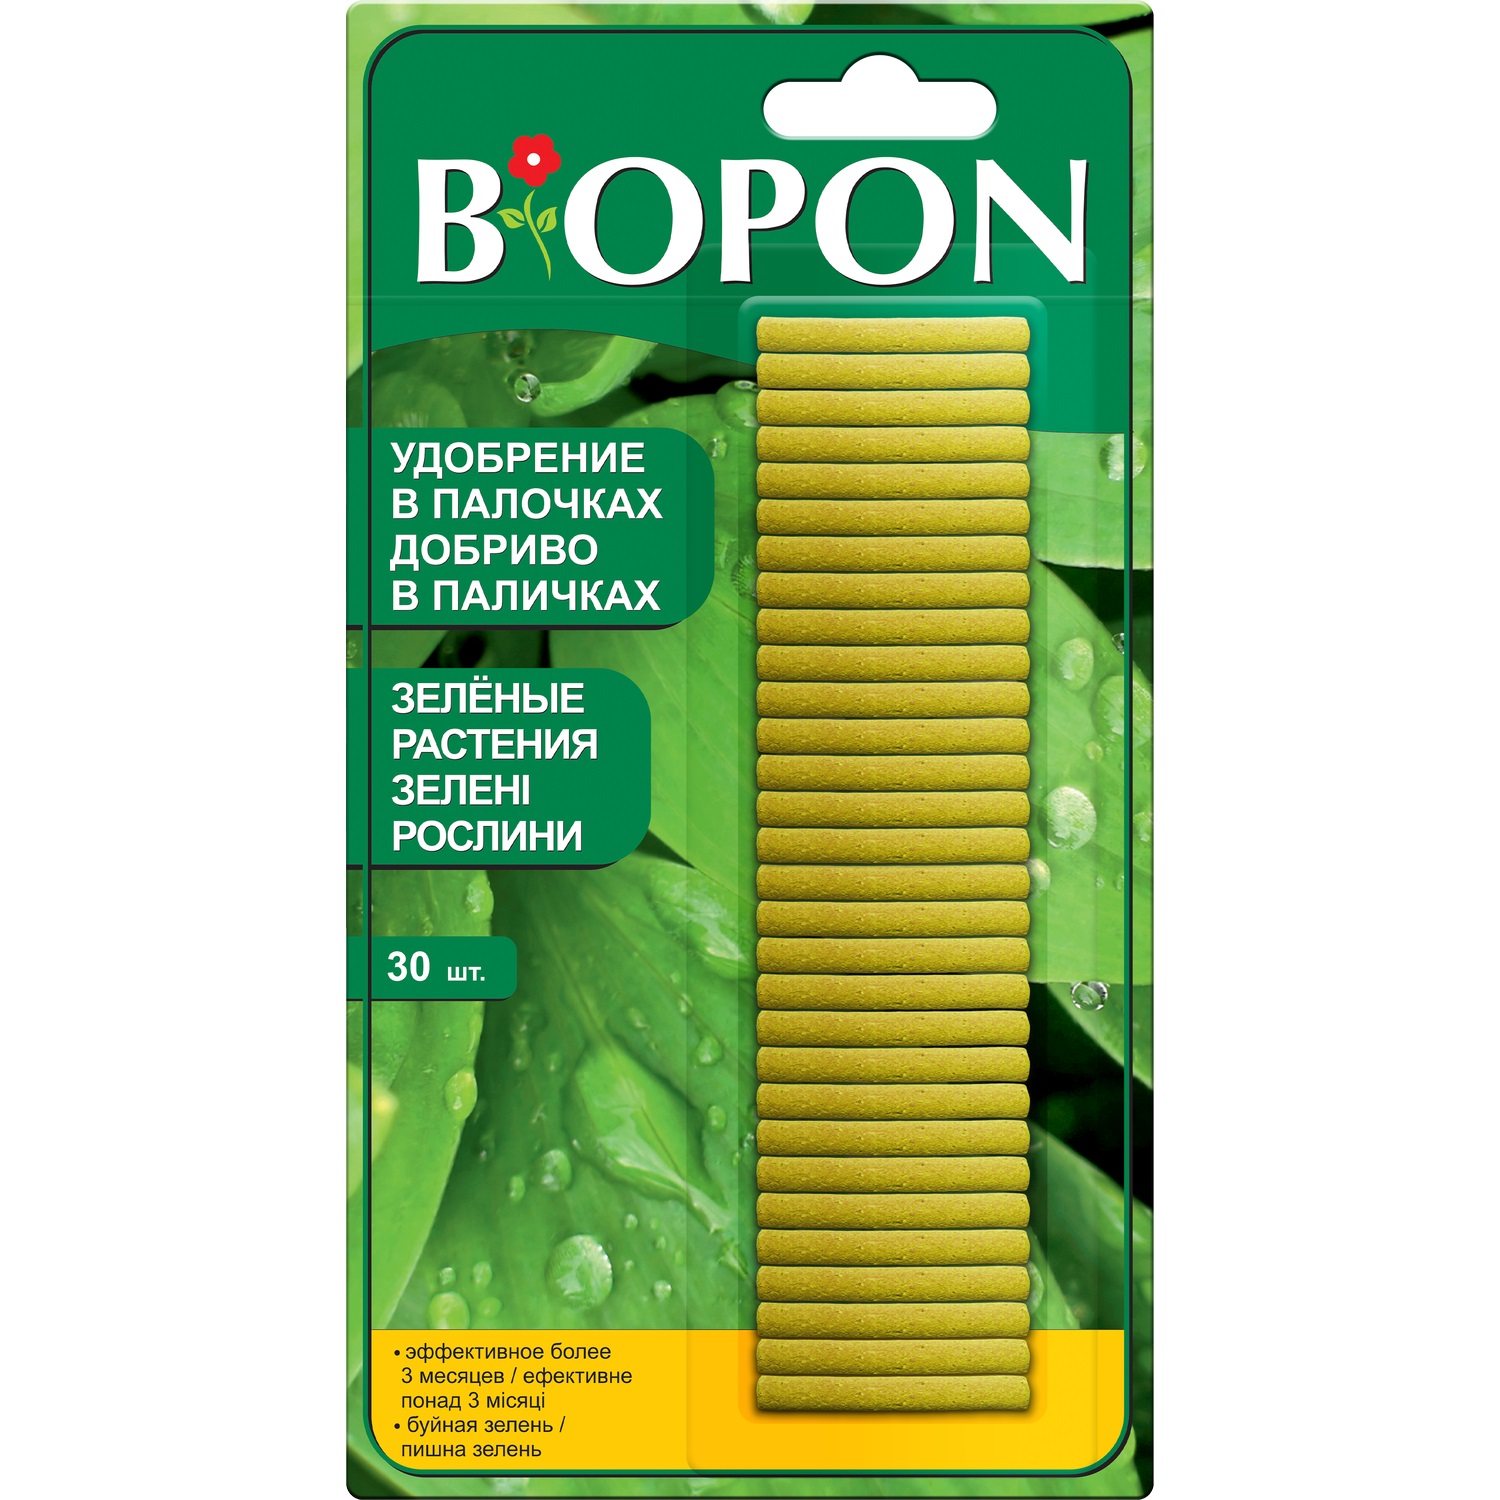 Удобрение в палочках Biopon для зеленых растений, 30 шт. - фото 1